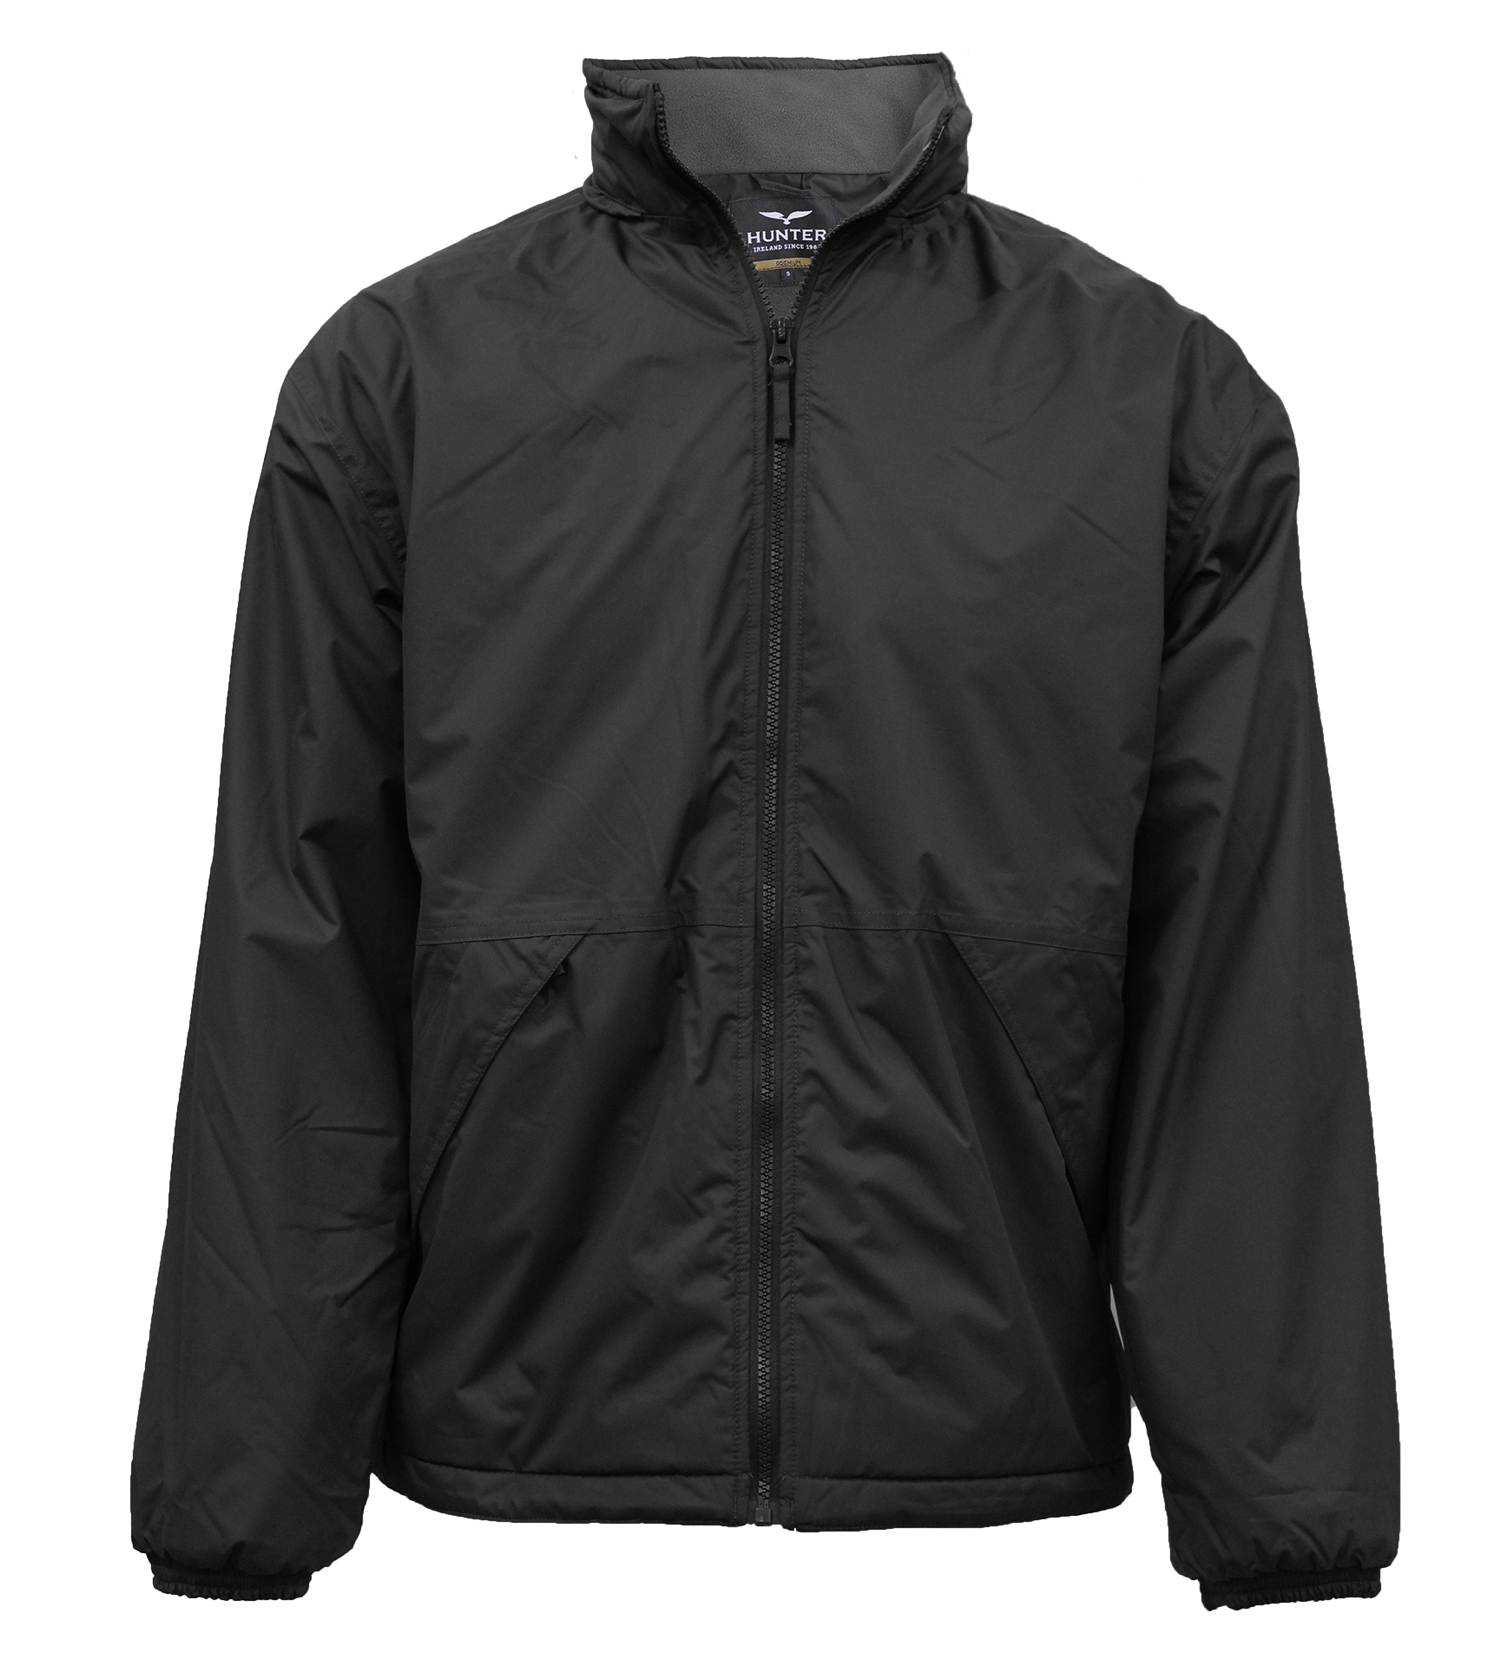 Oslo Jacket - Black/Grey - Quality Schoolwear